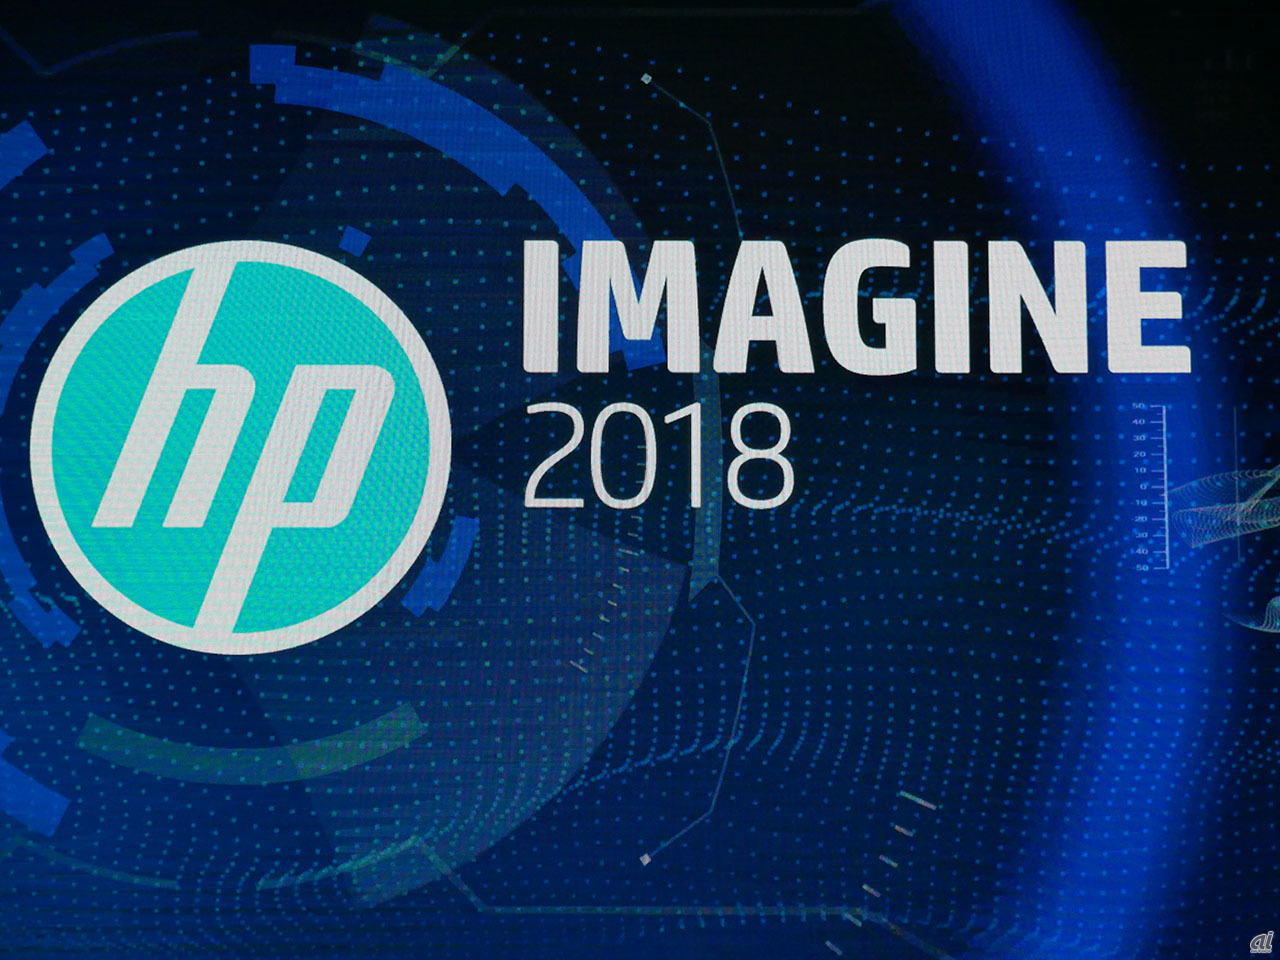 シンガポールで開催された「HP Imagine 2018」